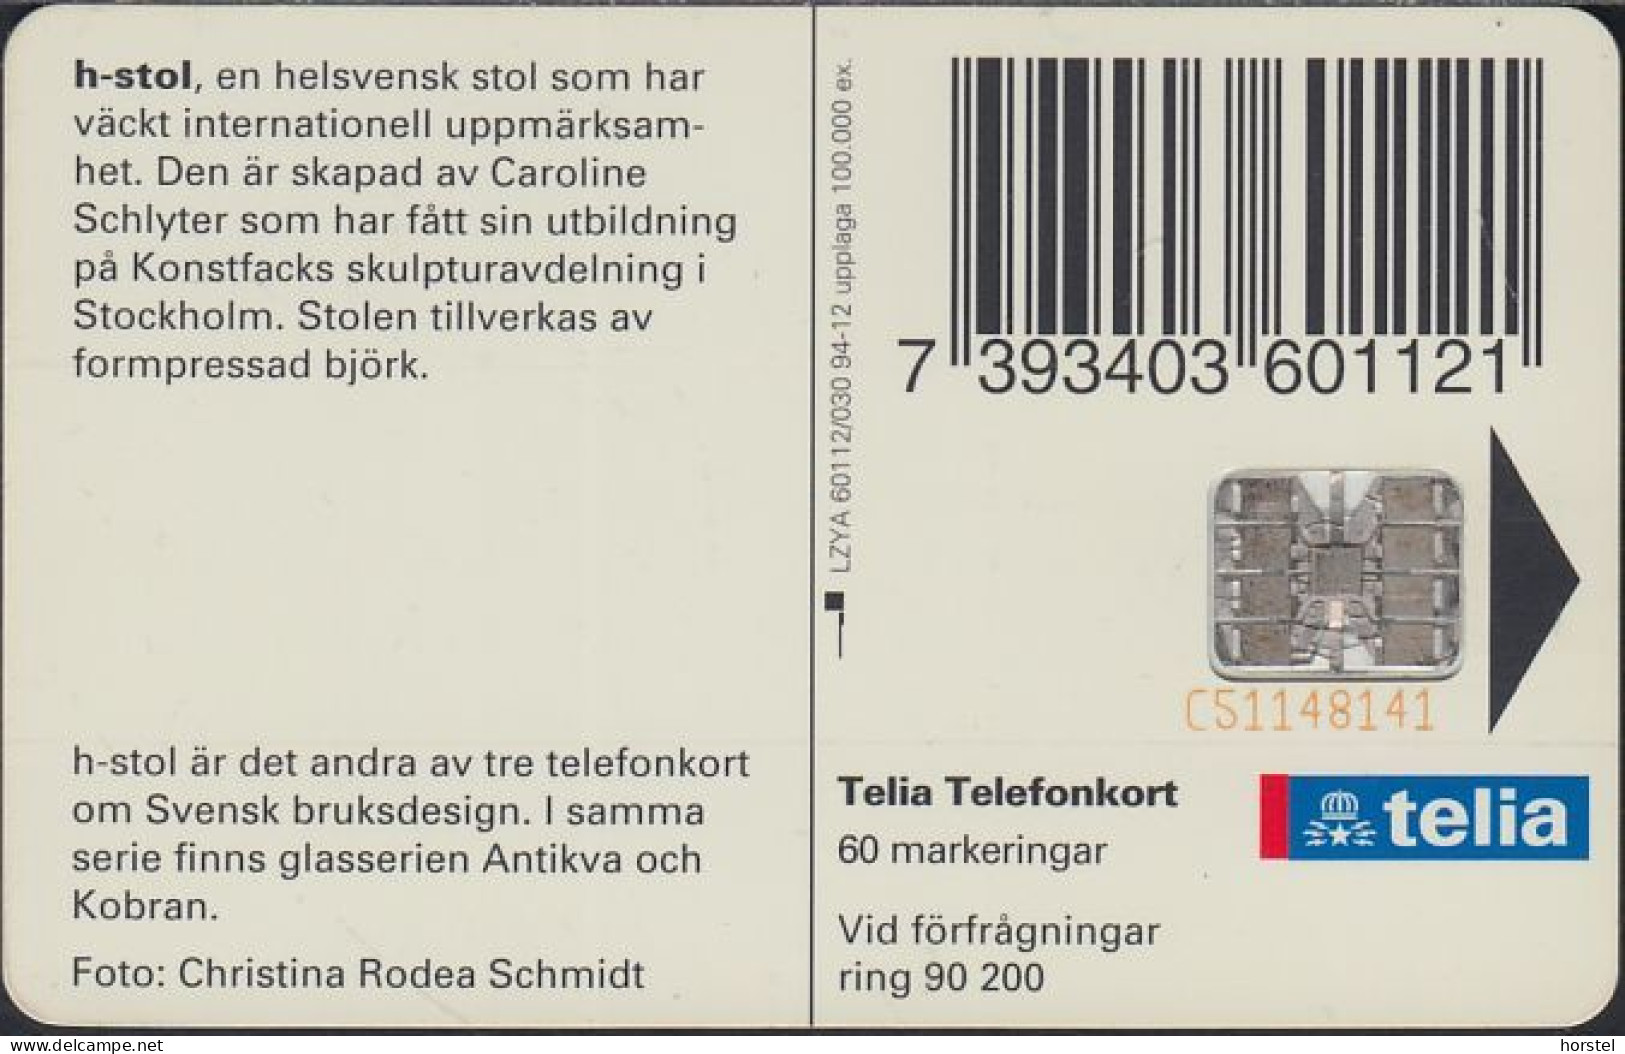 Schweden Chip 093  Design - H-shaped Chair - Stuhl  (60112/030) Red BN C51148141 - Schweden